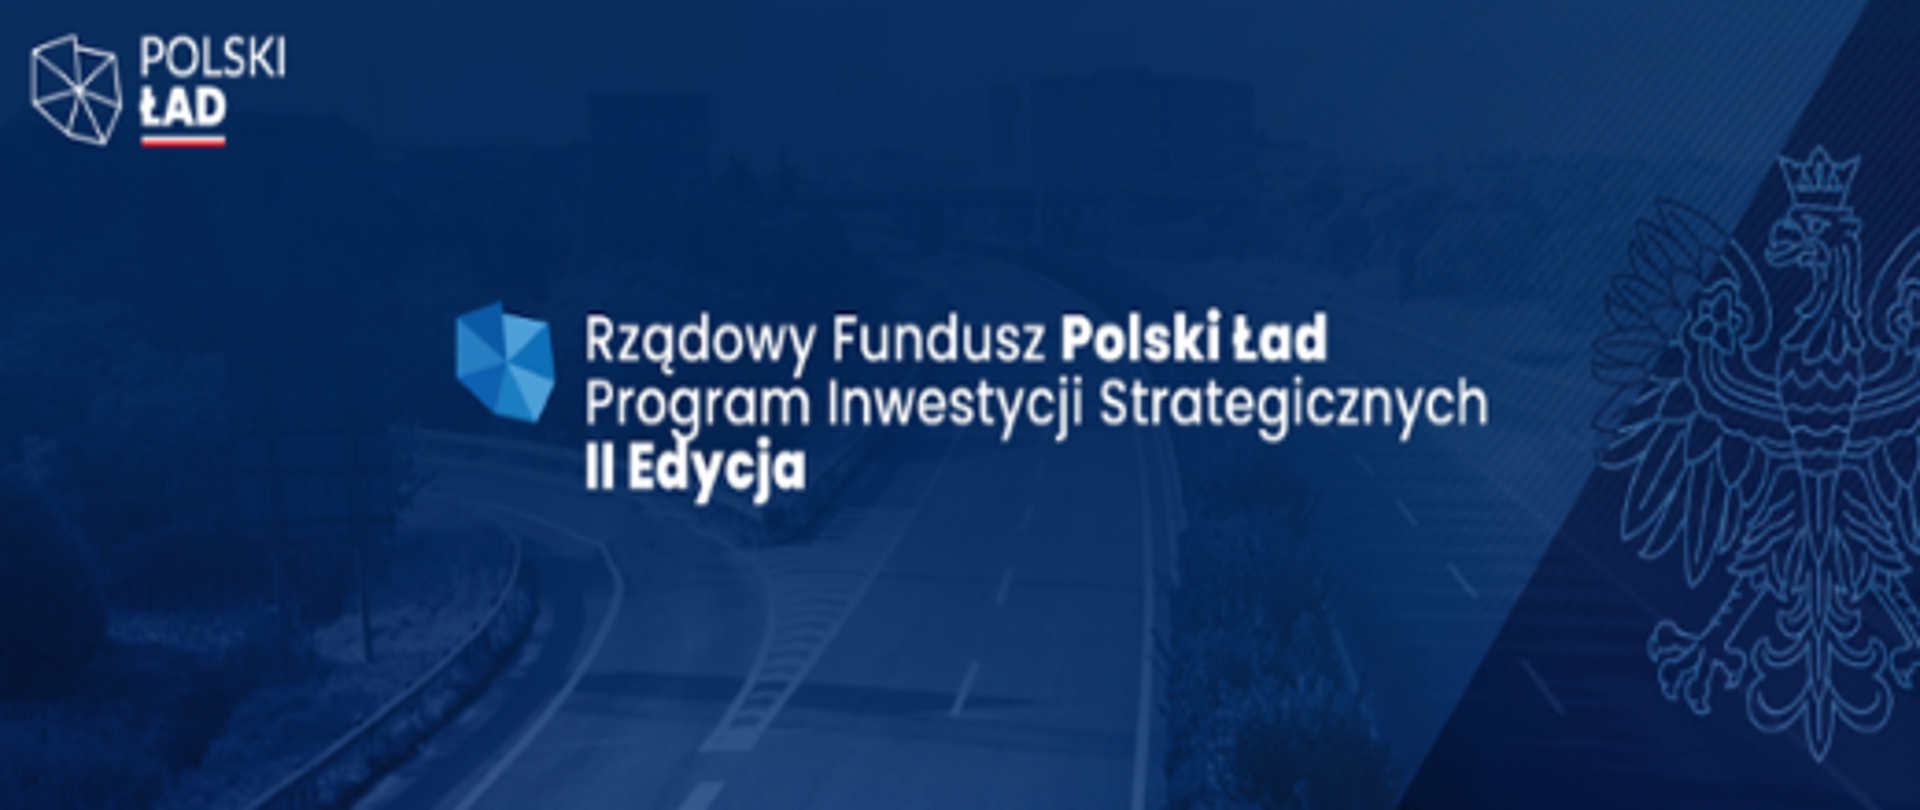 Polski Ład - Rządowy Fundusz Polski Ład Program Inwestycji Strategicznych II edycja